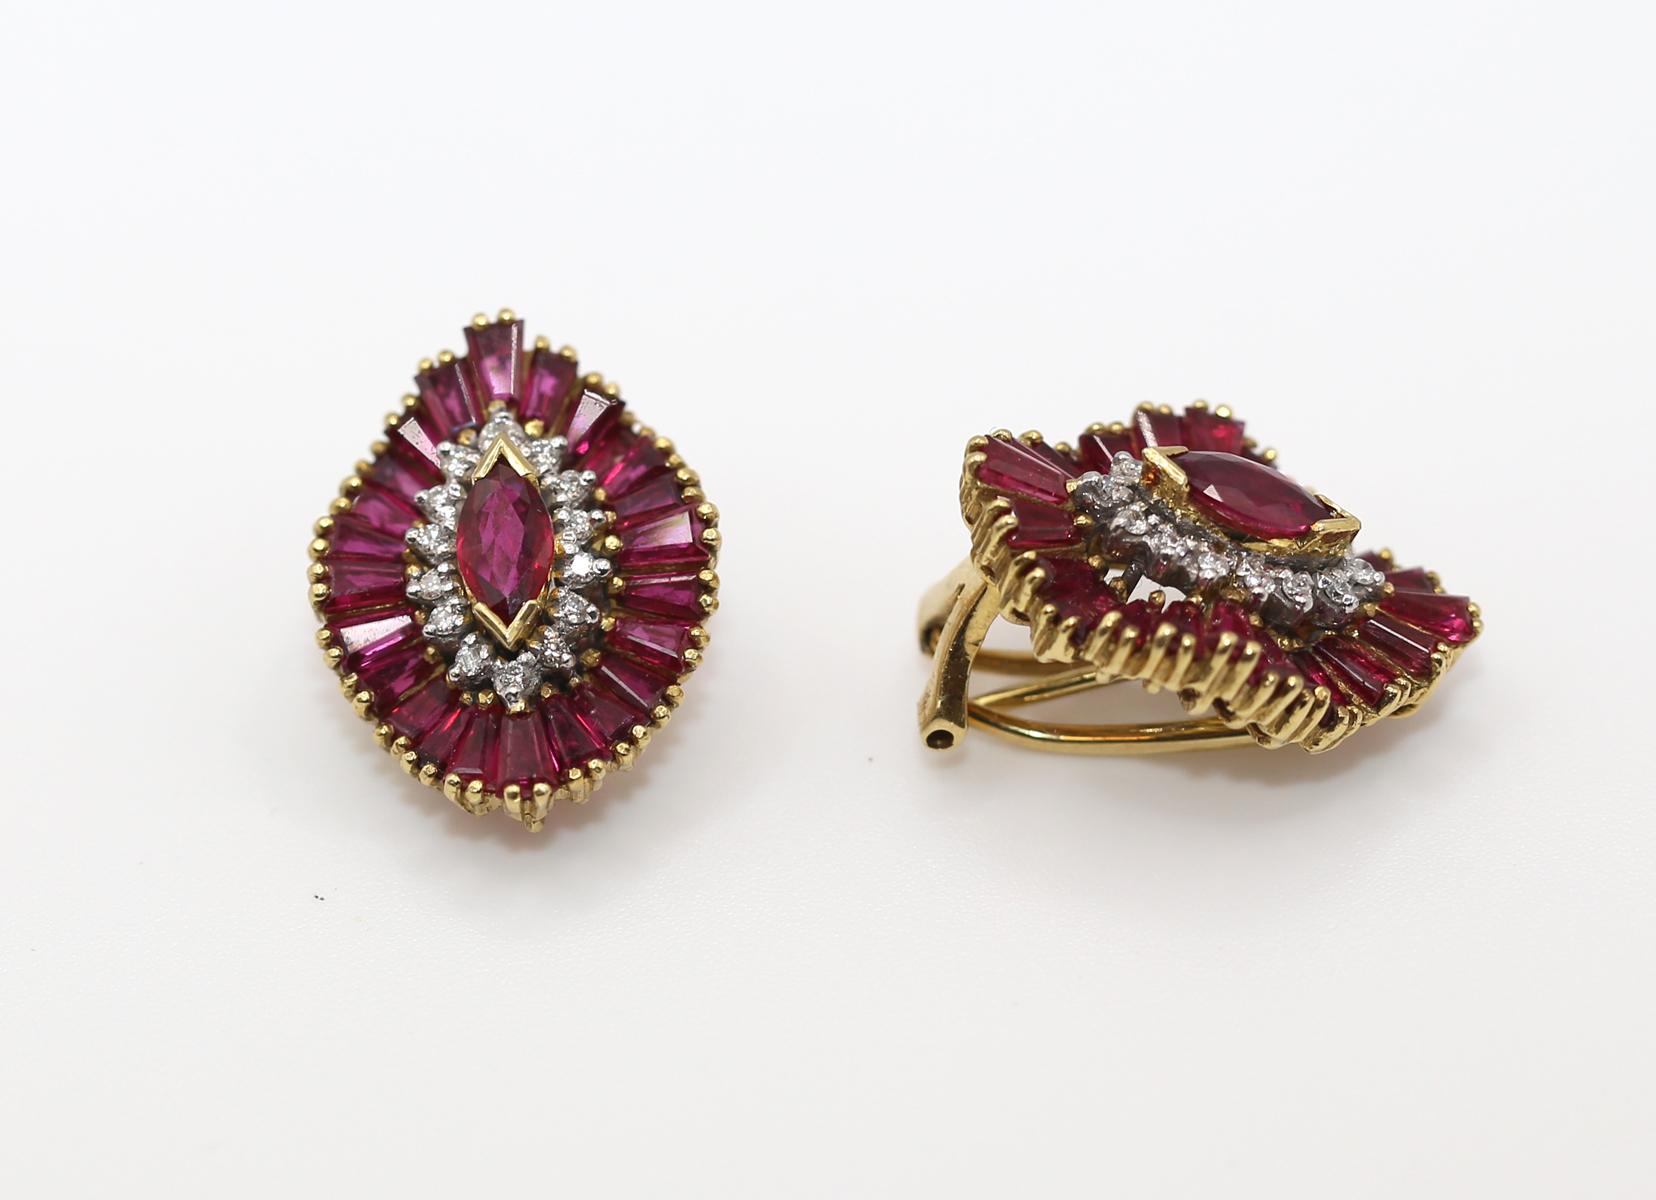 Rubine Diamanten Gelbgold-Ohrringe. Erstellt um 1970. 18 Karat.

Eine schöne Kombination aus makellosen Steinen und dem außergewöhnlichen Können des Juweliers. Rubine werden mit einer 